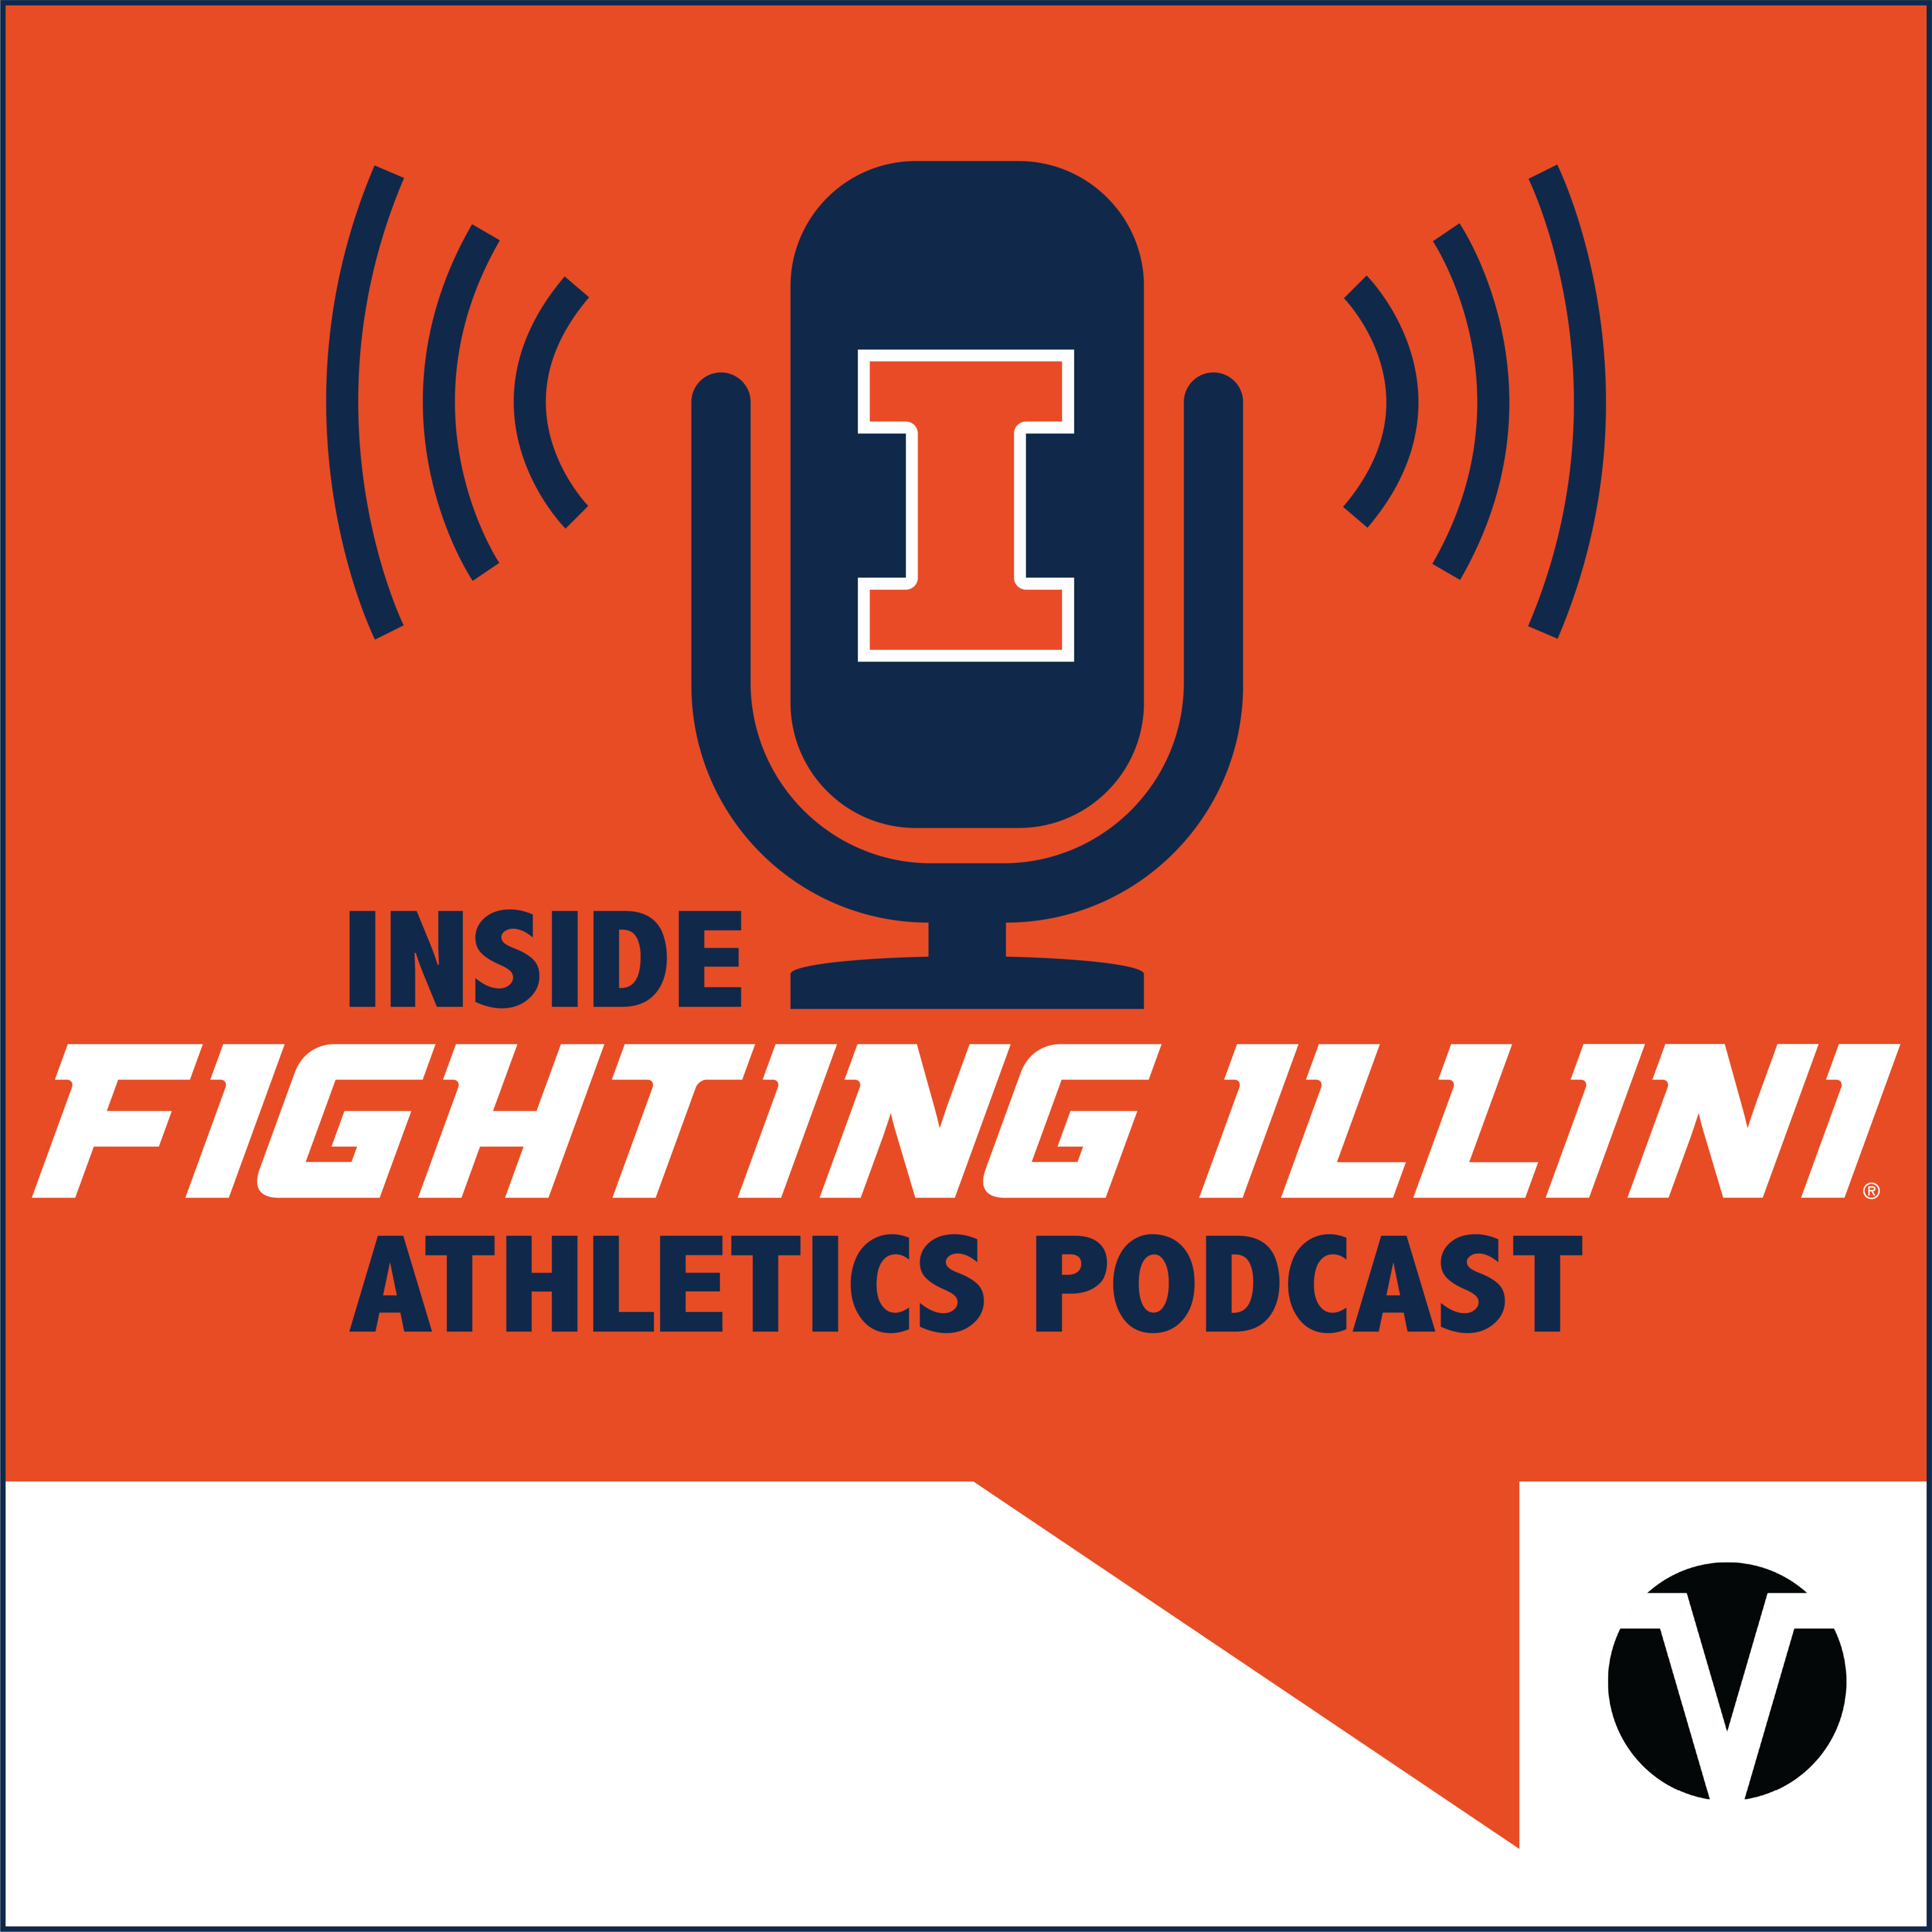 Inside Fighting Illini Athletics